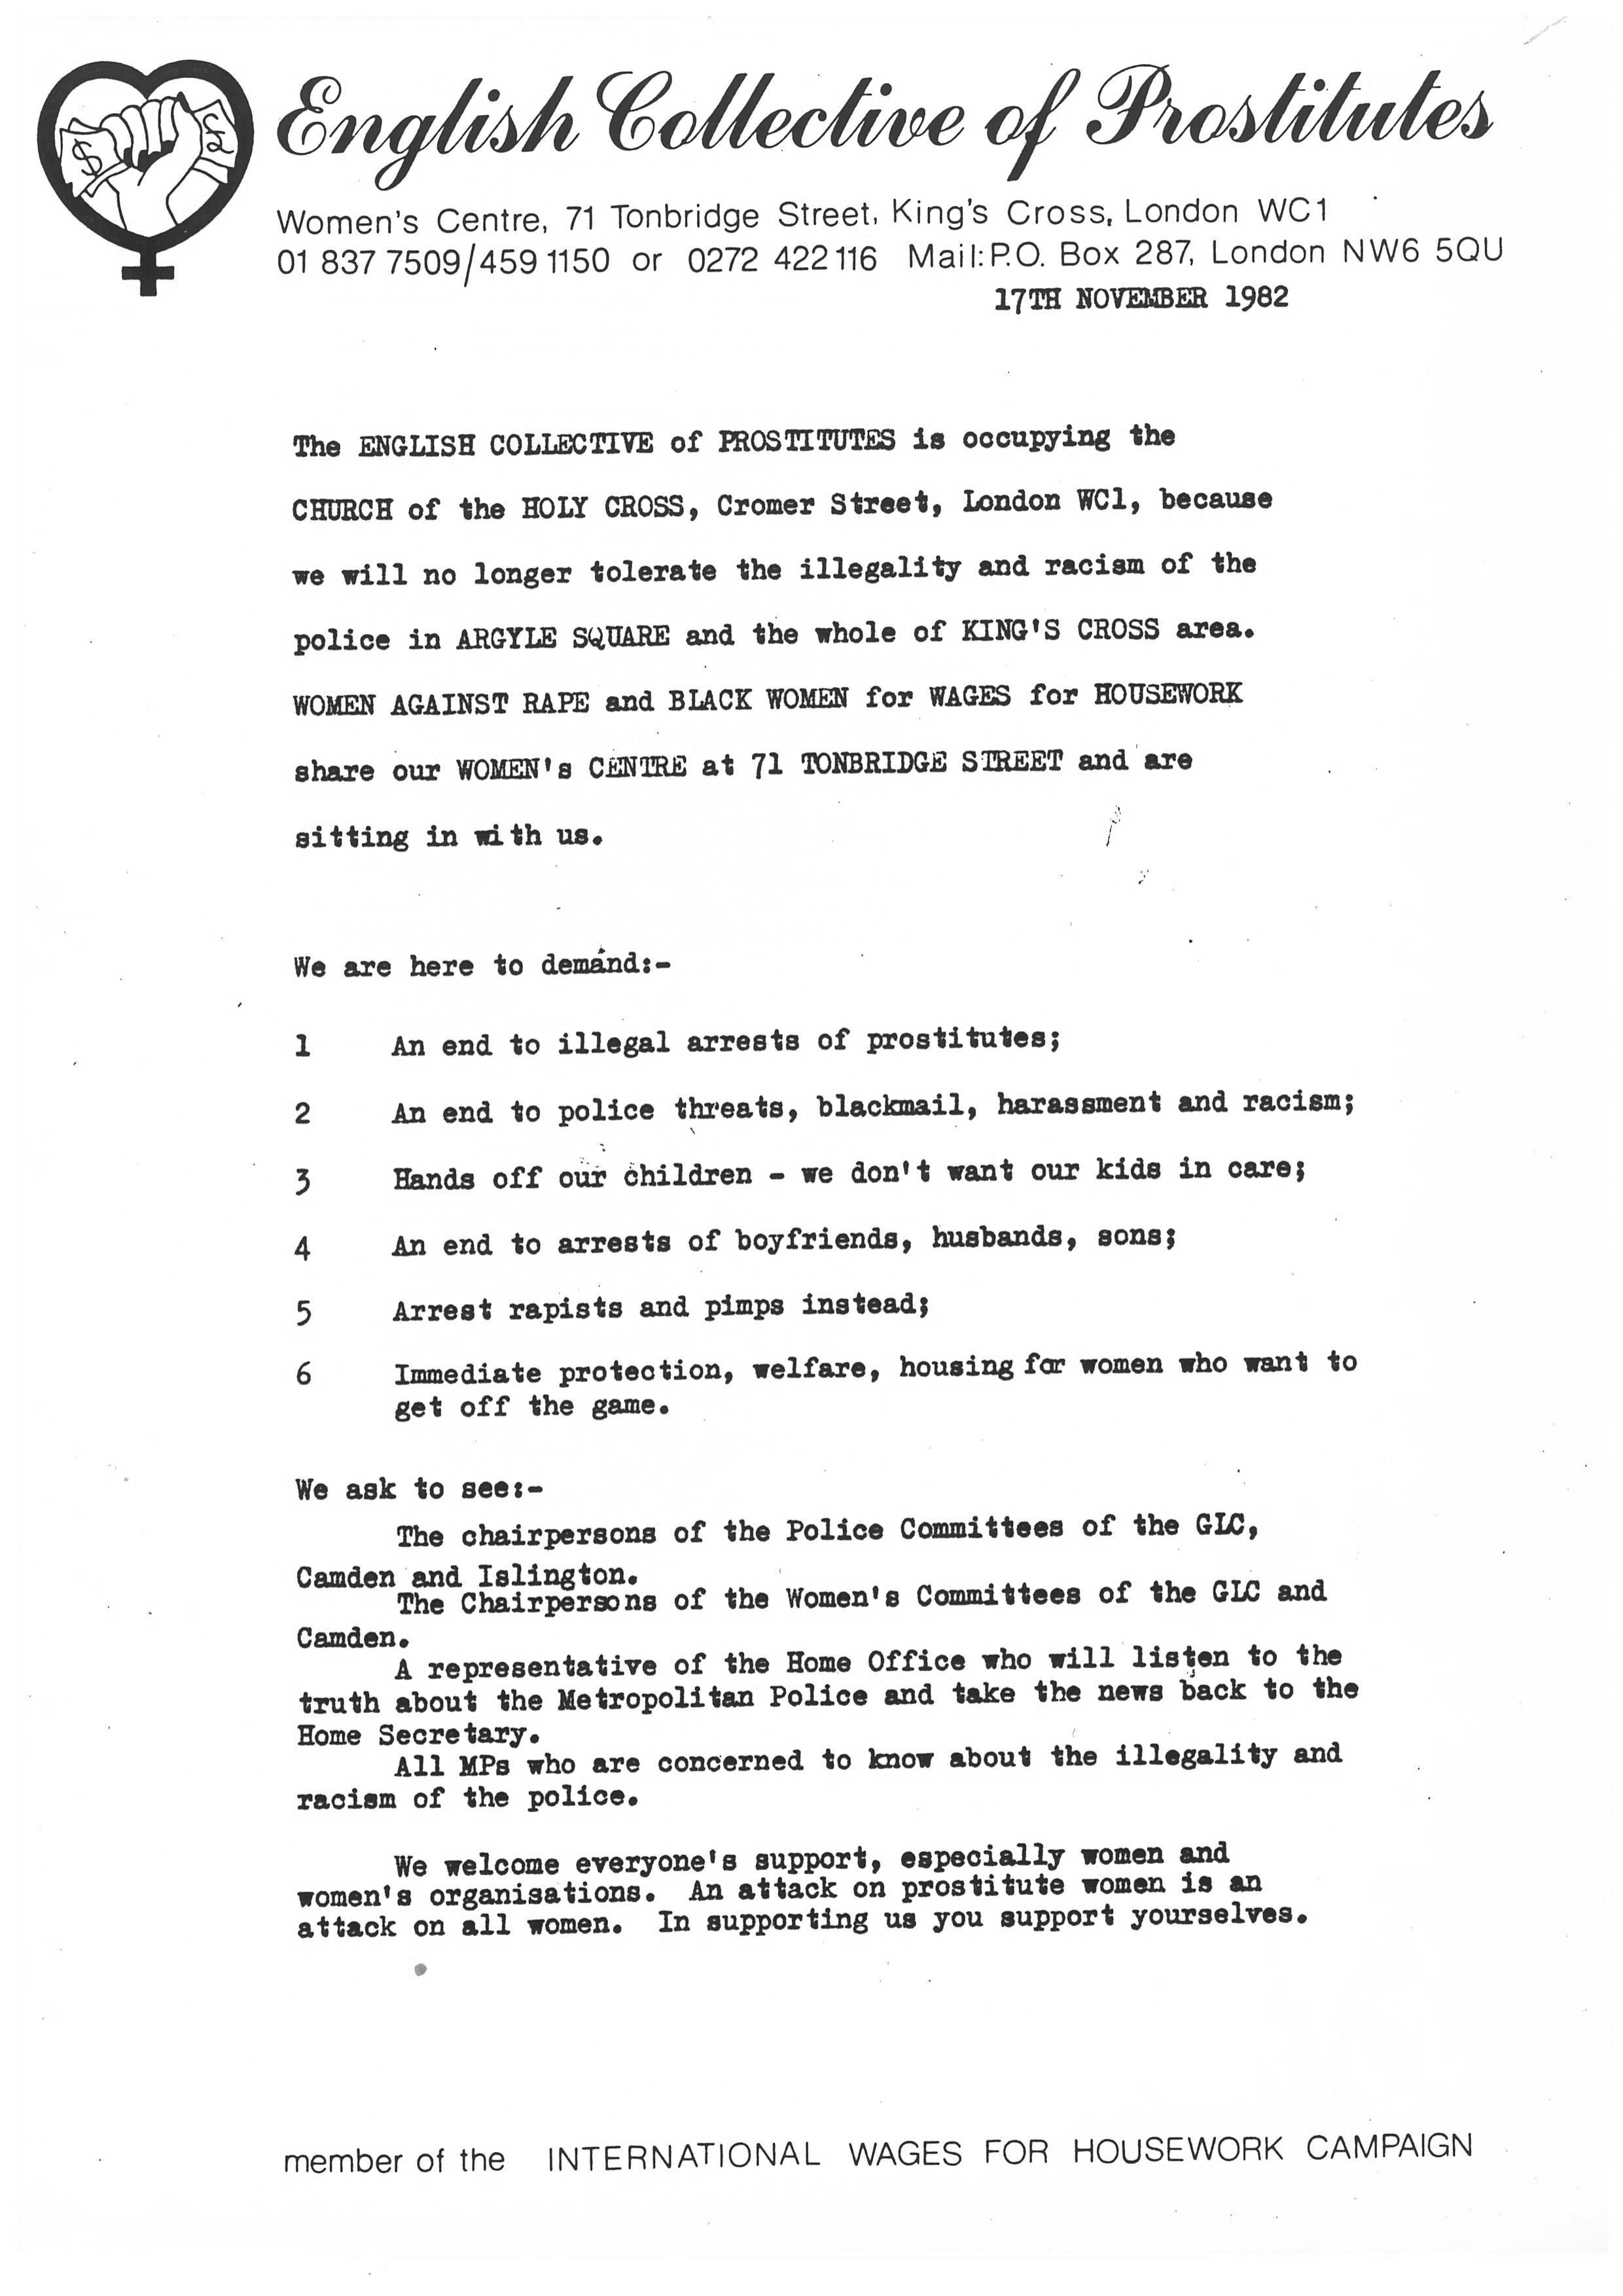 ECP Occupation statement 17 Nov 1982